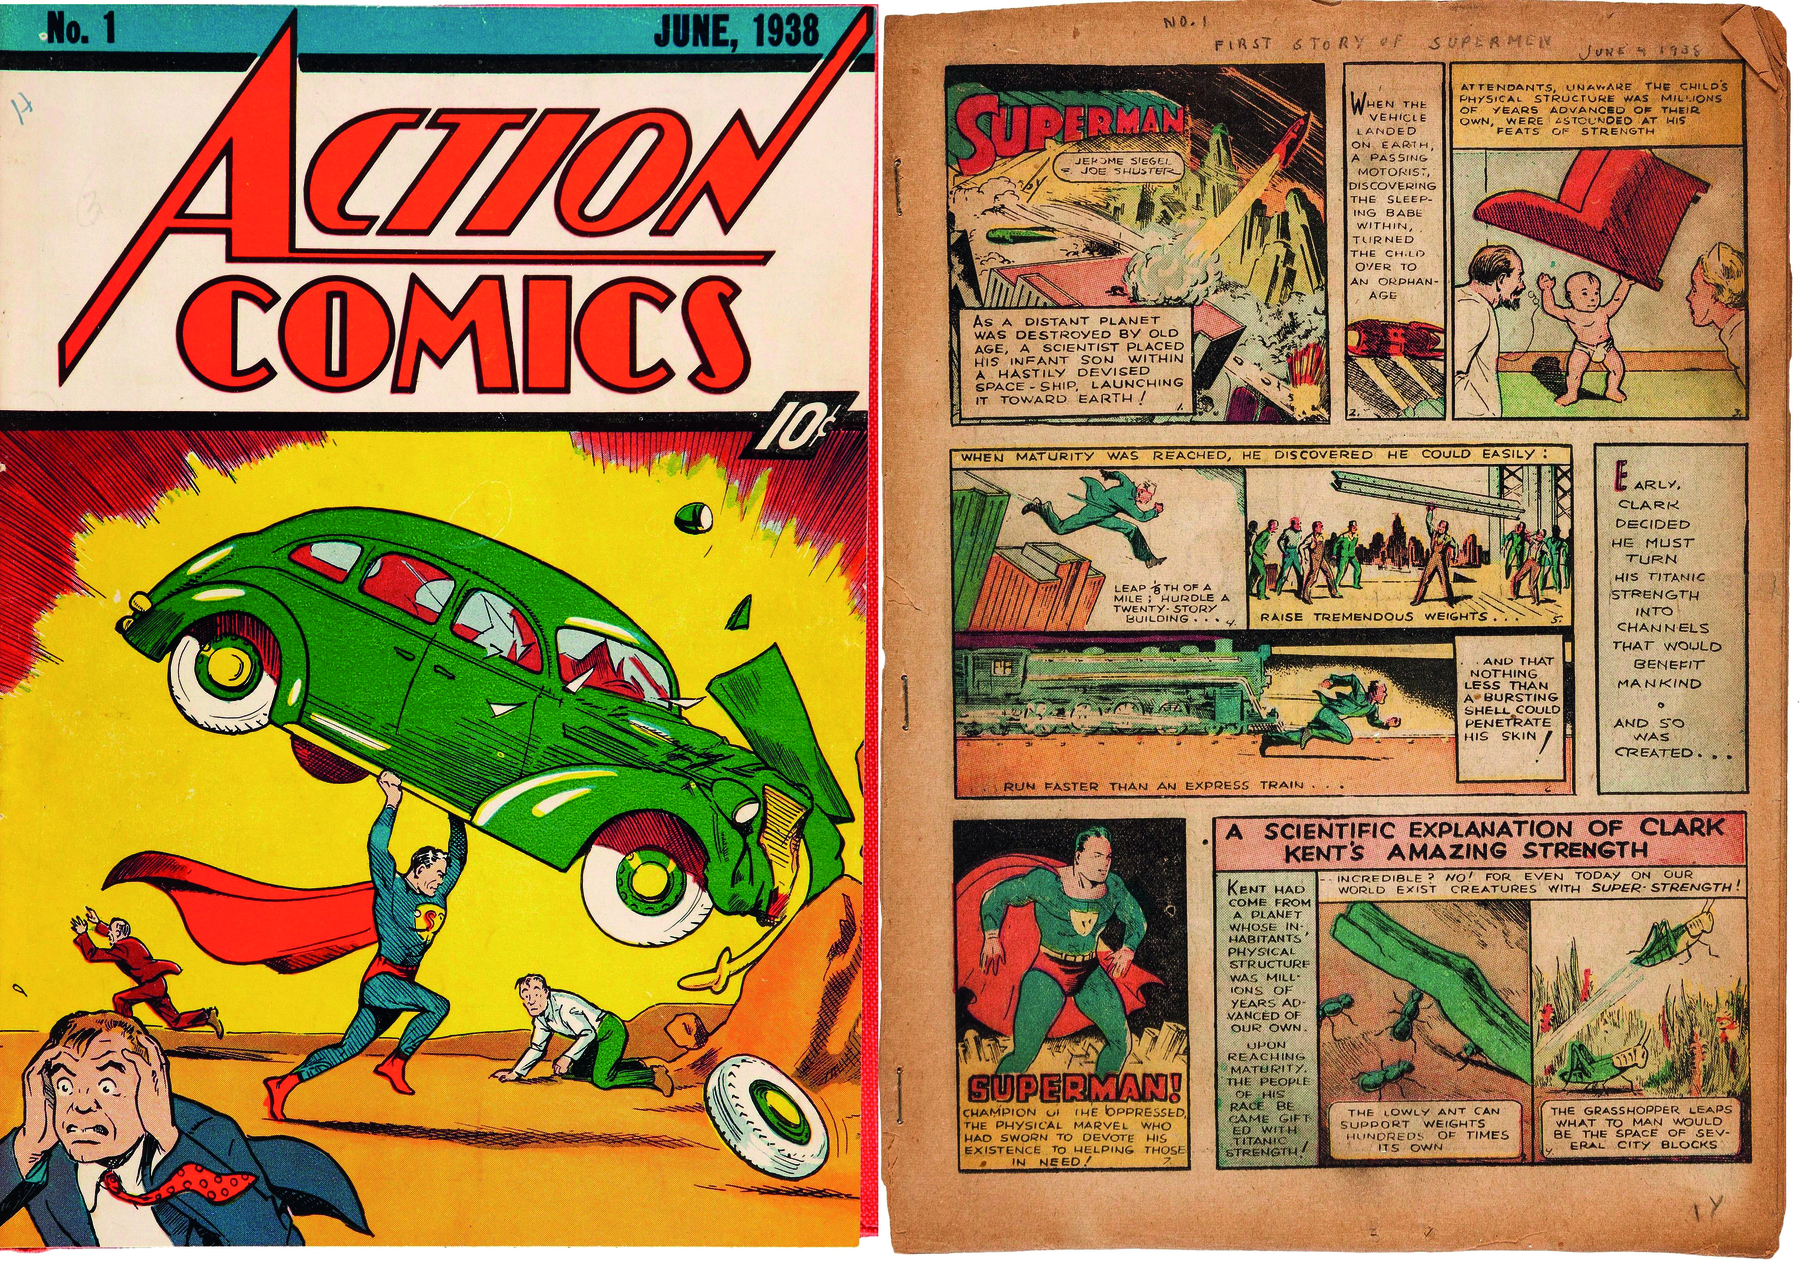 Fotografia. À esquerda, capa de revista em quadrinhos. Na parte superior, o título da revista: ACTION COMICS. Nº1. JUNE, 1938. Abaixo, ilustração, à esquerda, em primeiro plano, de um homem de terno azul com os olhos arregalados e as mãos na cabeça. Atrás, Superman, homem de roupas azuis e capa vermelha. Ele segura um carro verde com as mãos. Ao lado, um homem caído no chão. À direta, página de uma história em quadrinhos do personagem Superman, composta de ilustrações e textos. O papel é amarelado.